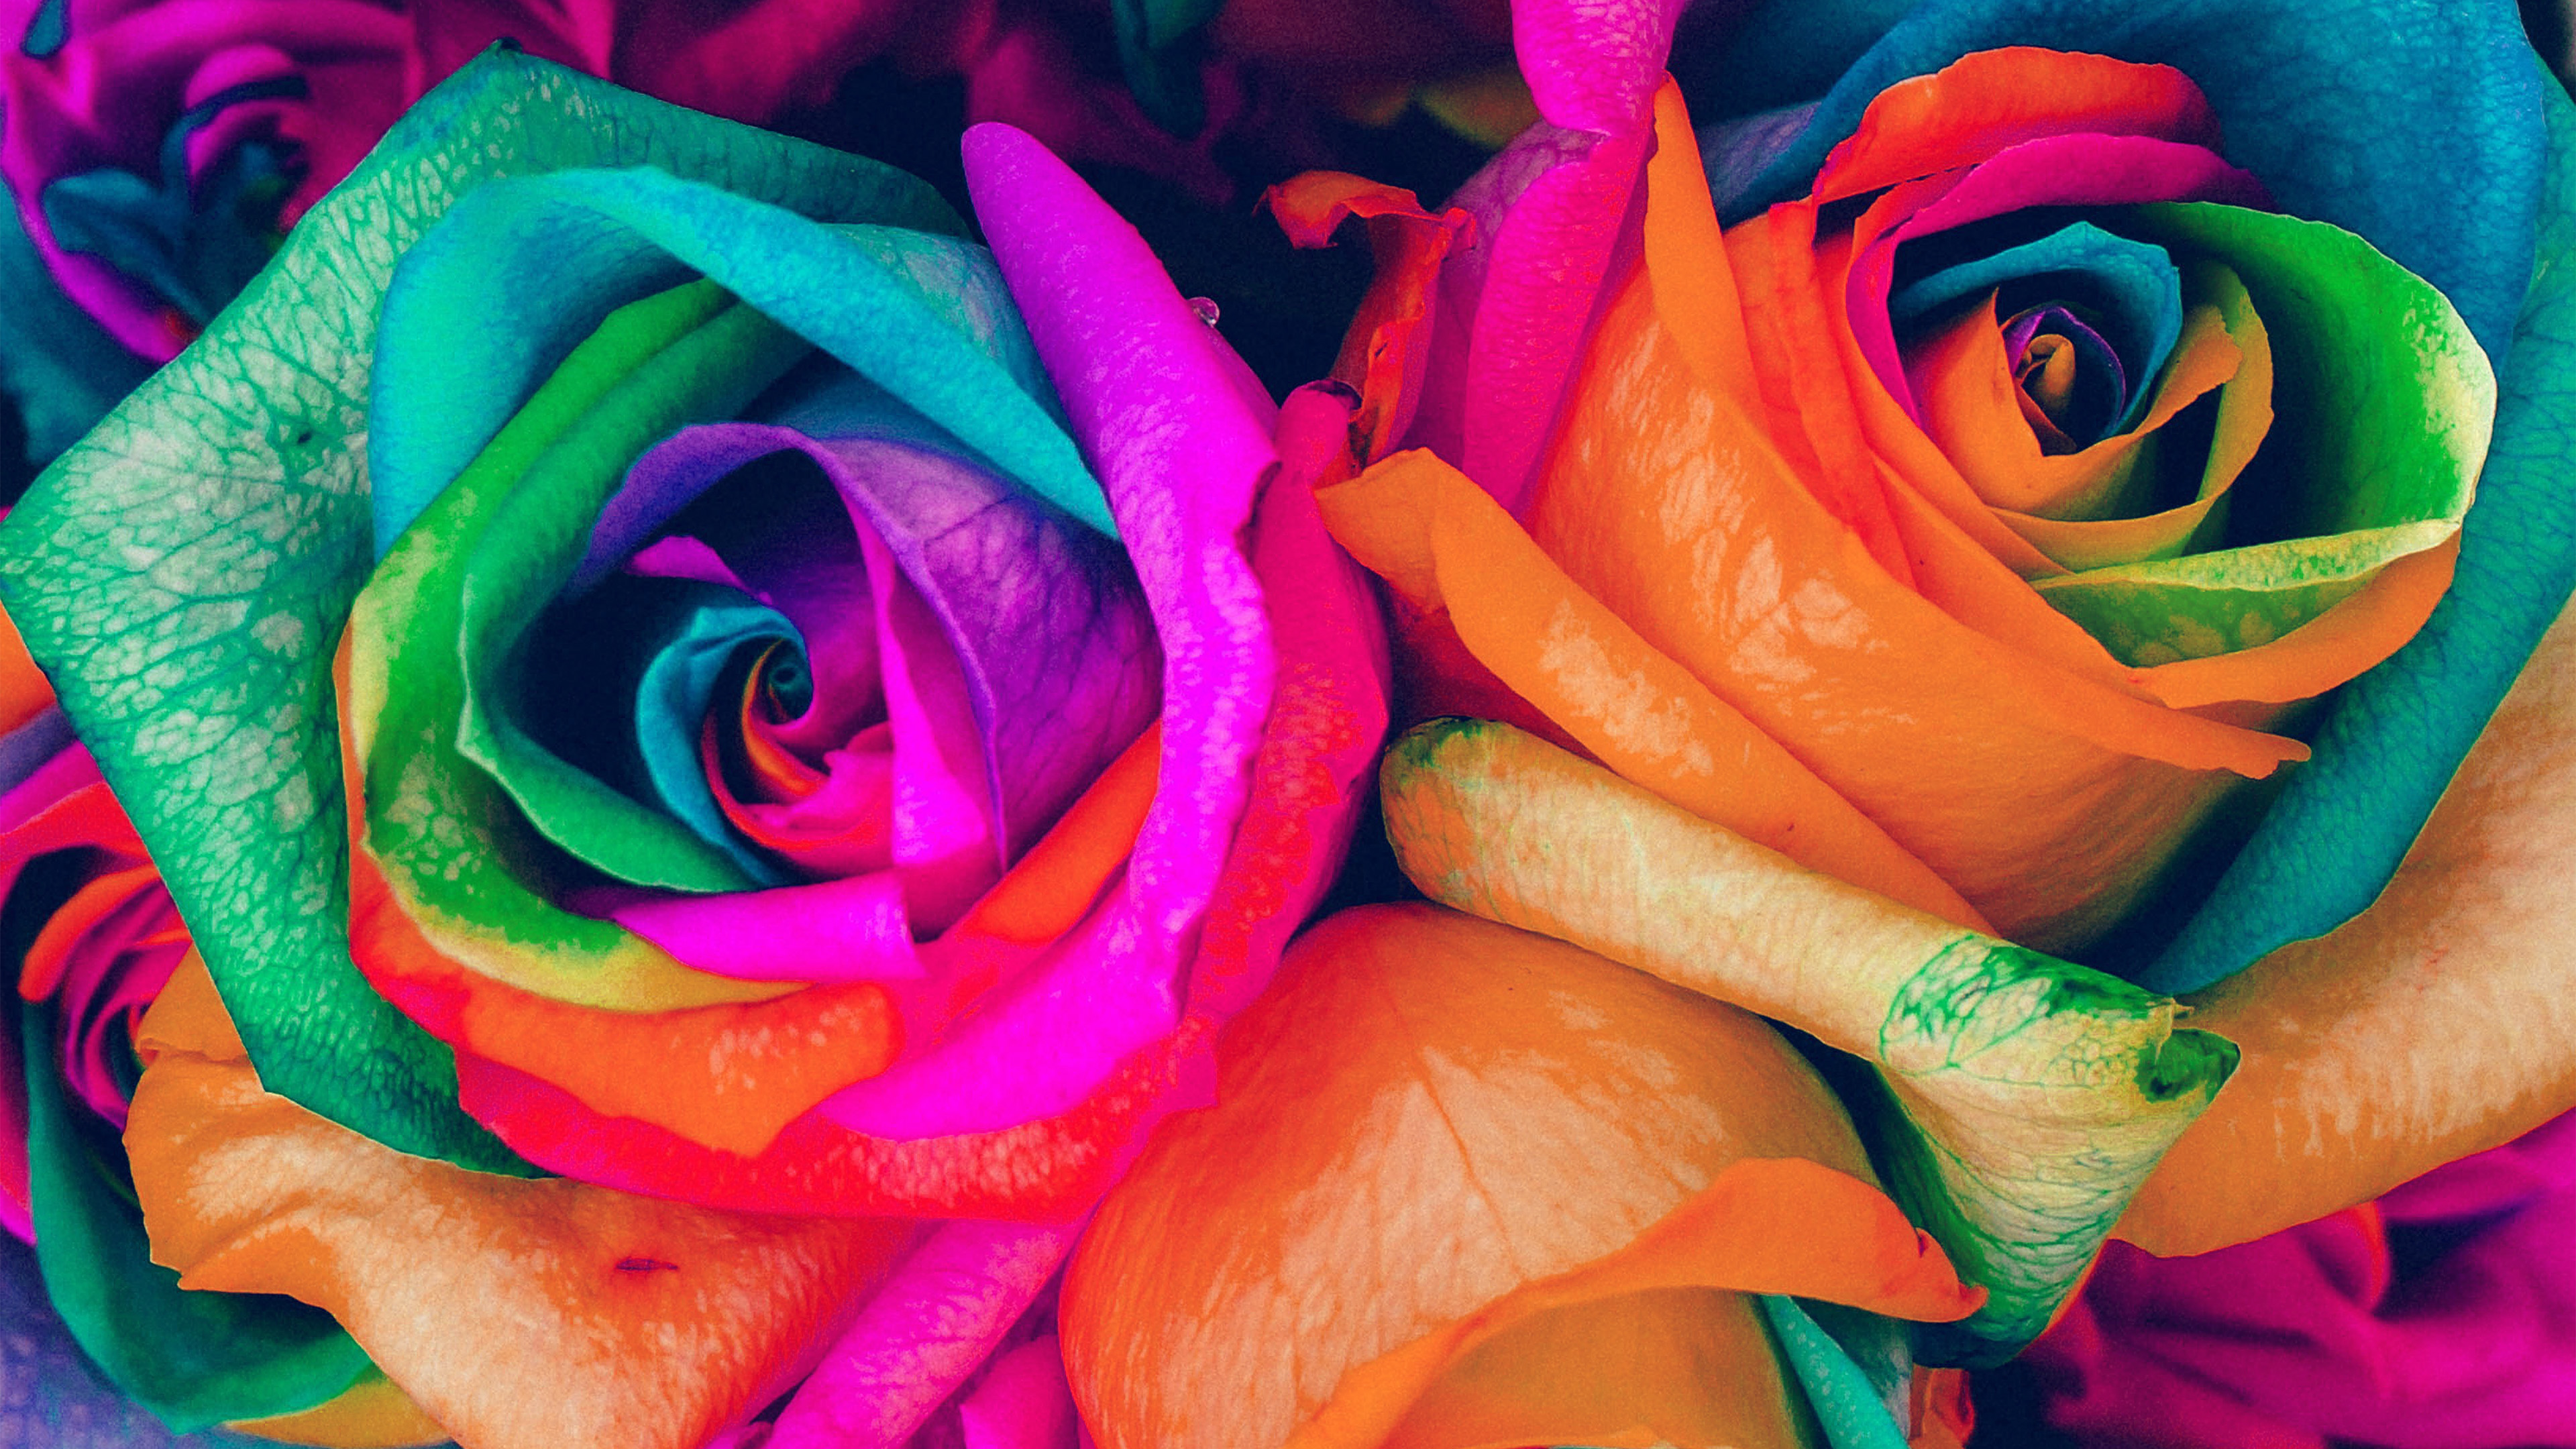 rose colour wallpaper,flower,rose,rainbow rose,petal,garden roses